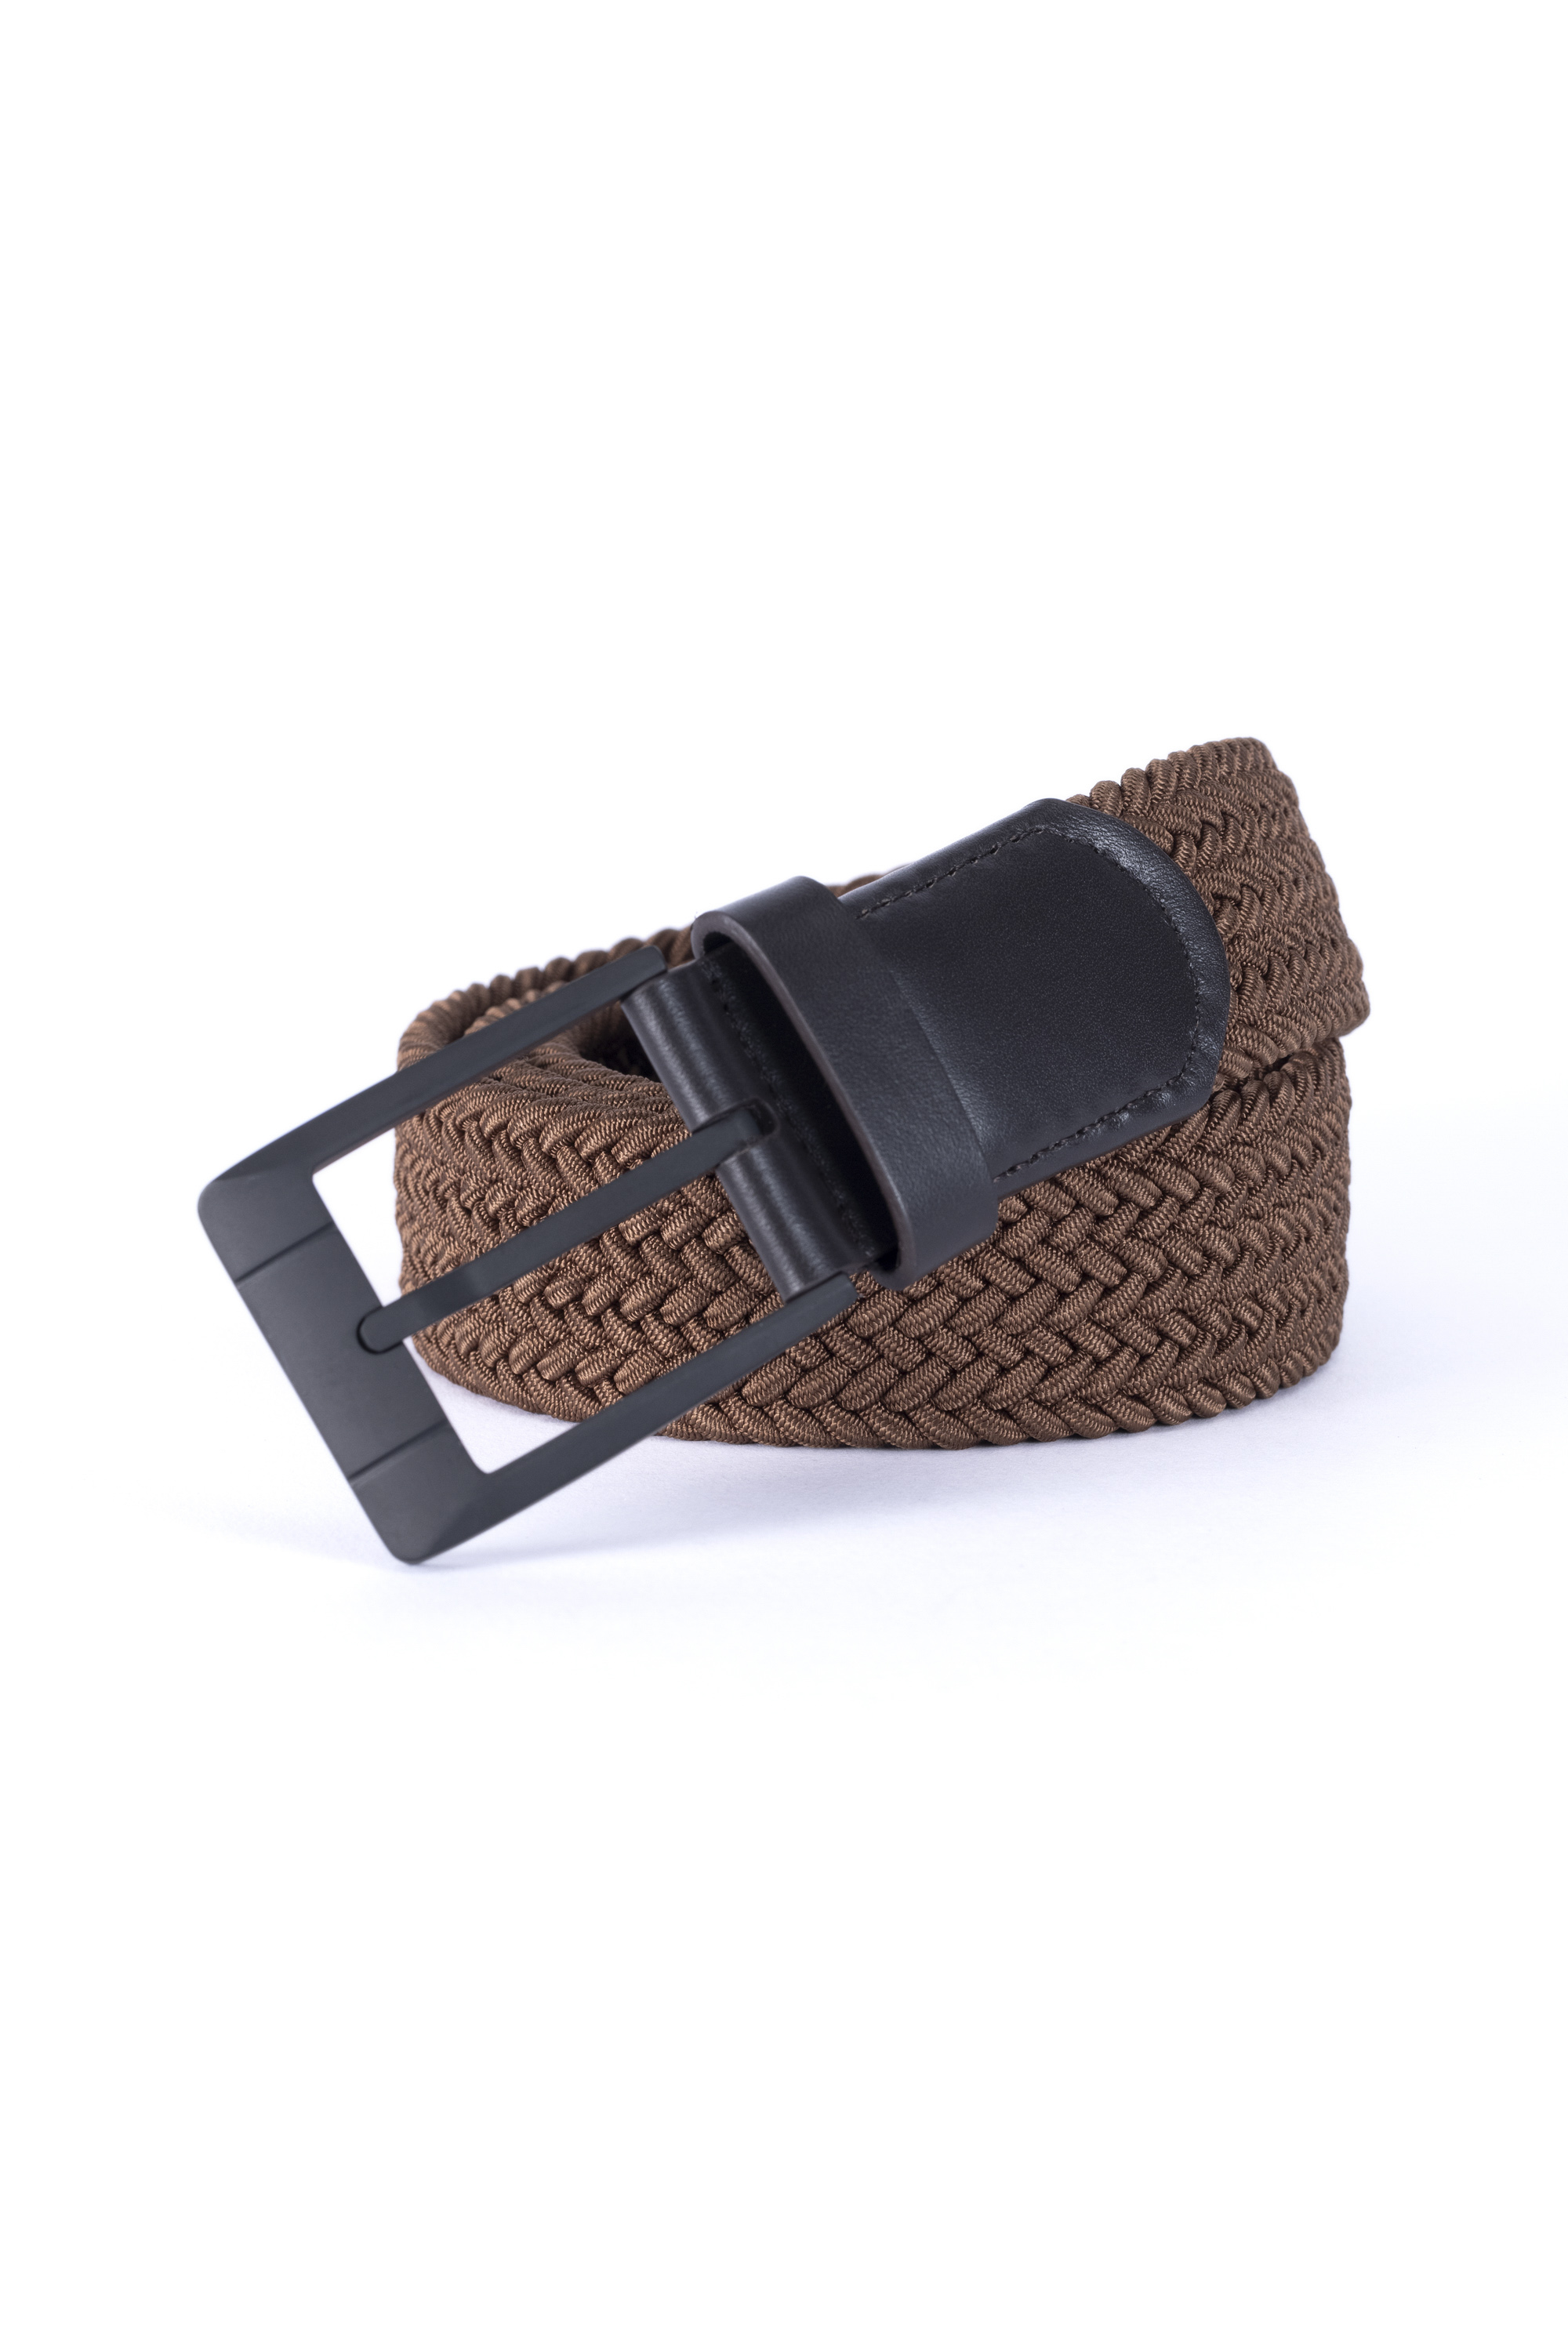 Elastic belt - Product - LEVADE - Shop - Members' Portal - The